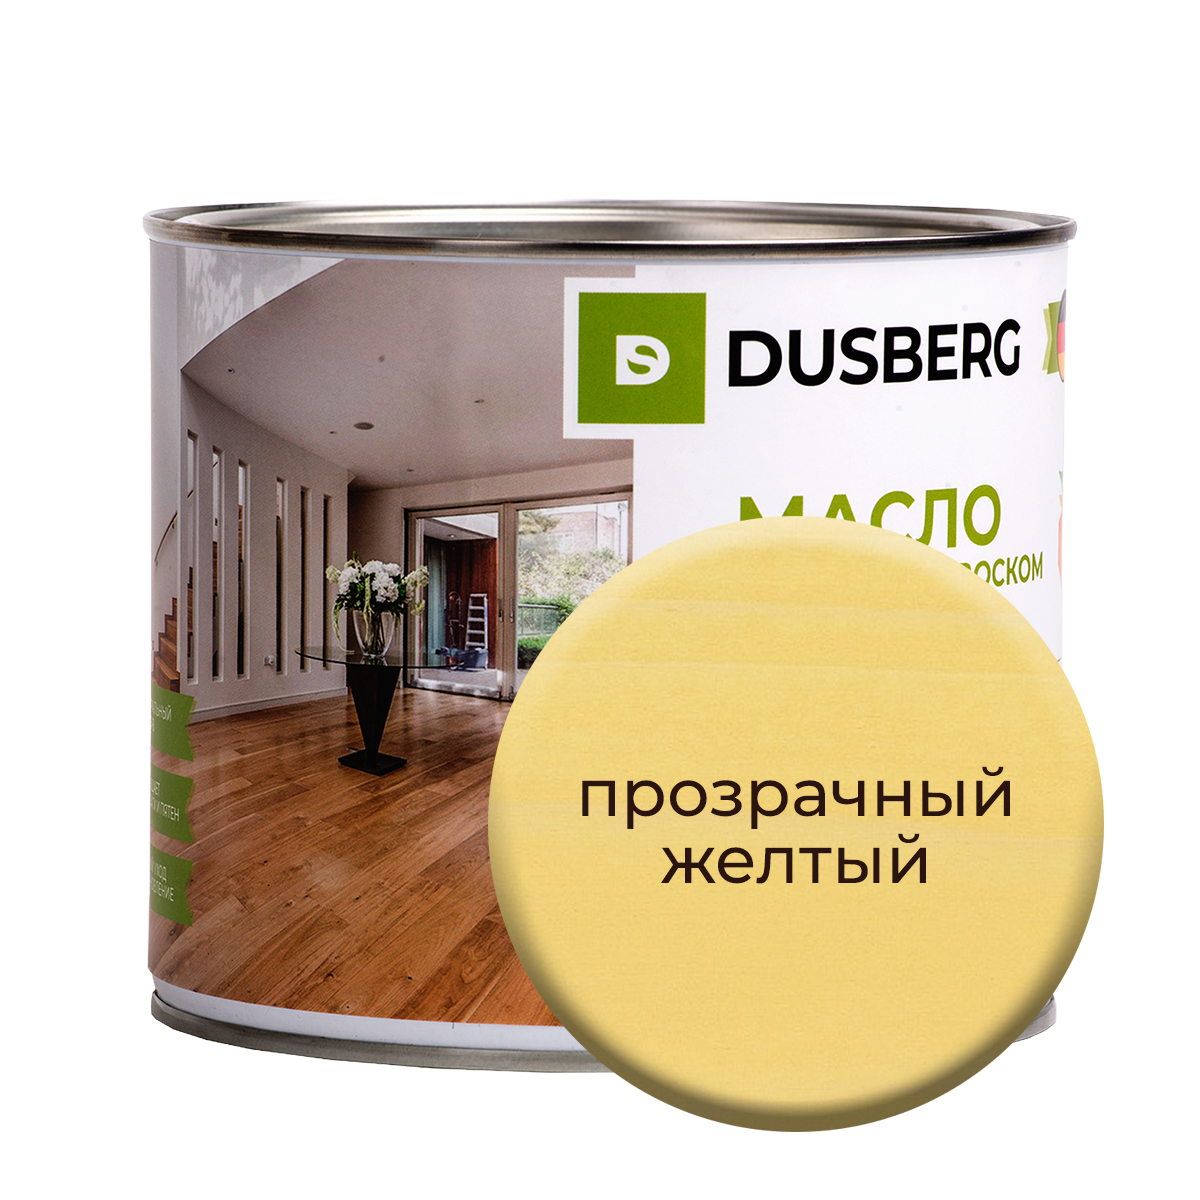 Масло Dusberg с твердым воском на бесцветной основе, 2 л Прозрачный желтый